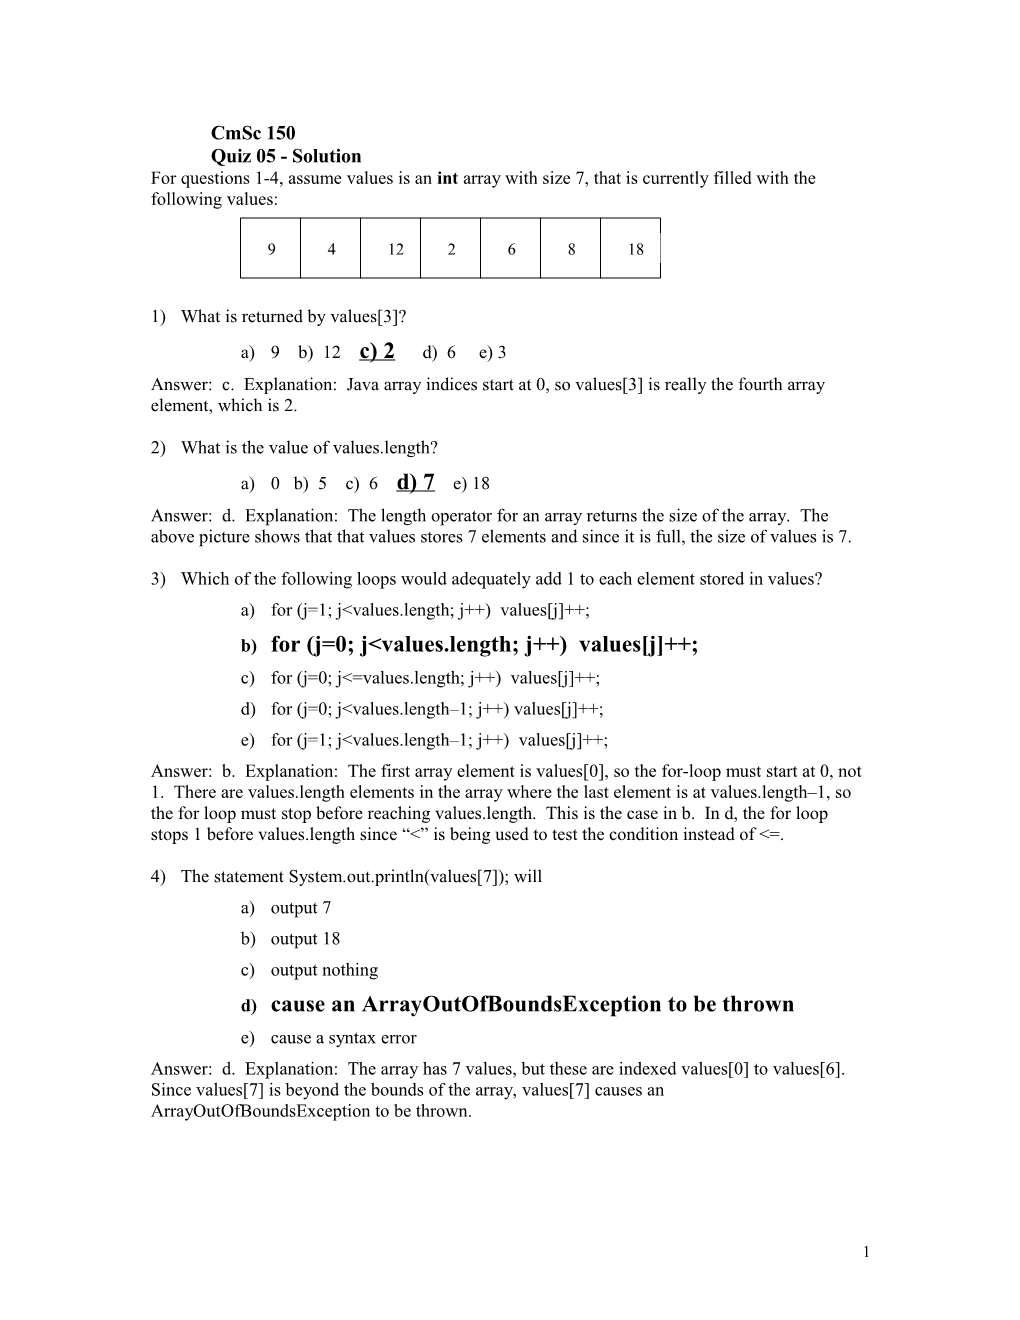 Quiz 05 - Solution